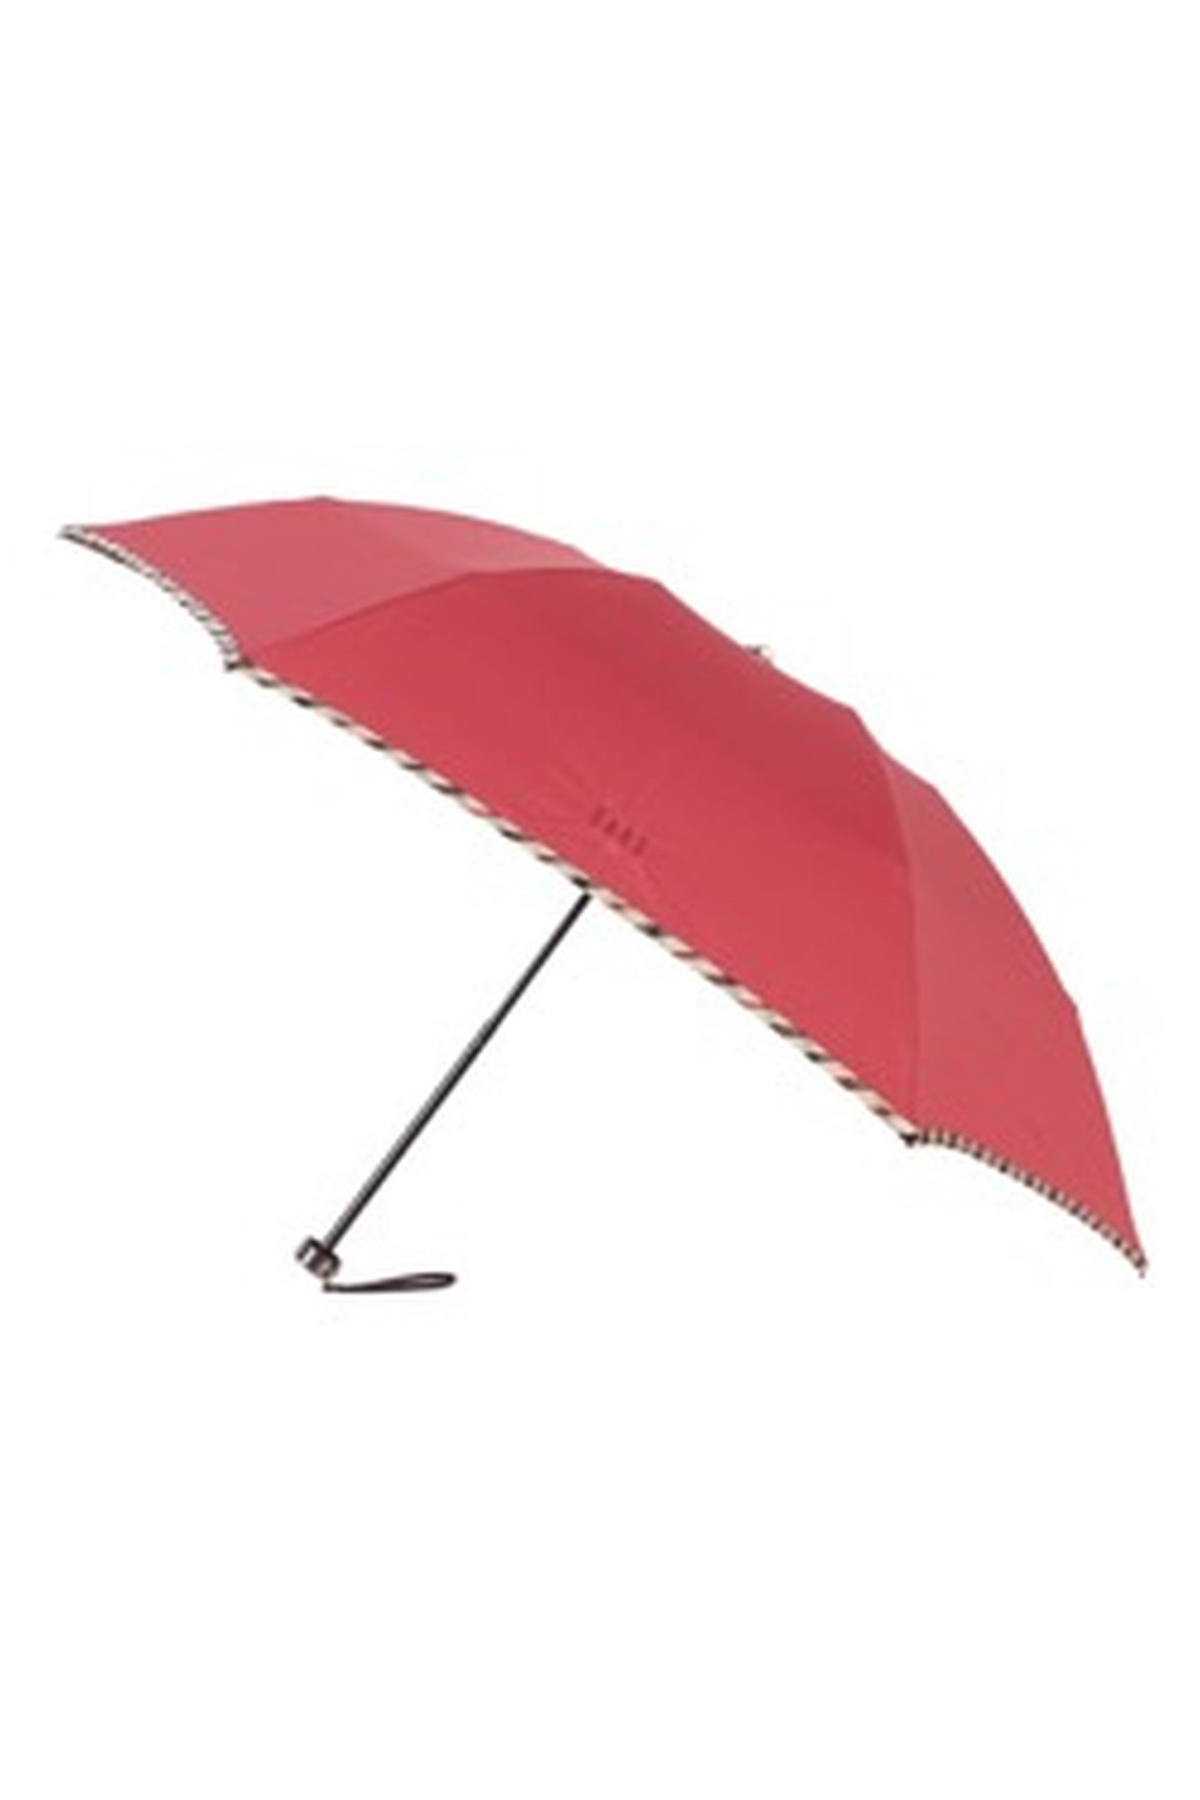 【雨傘】折りたたみ傘無地パイピング 詳細画像 4